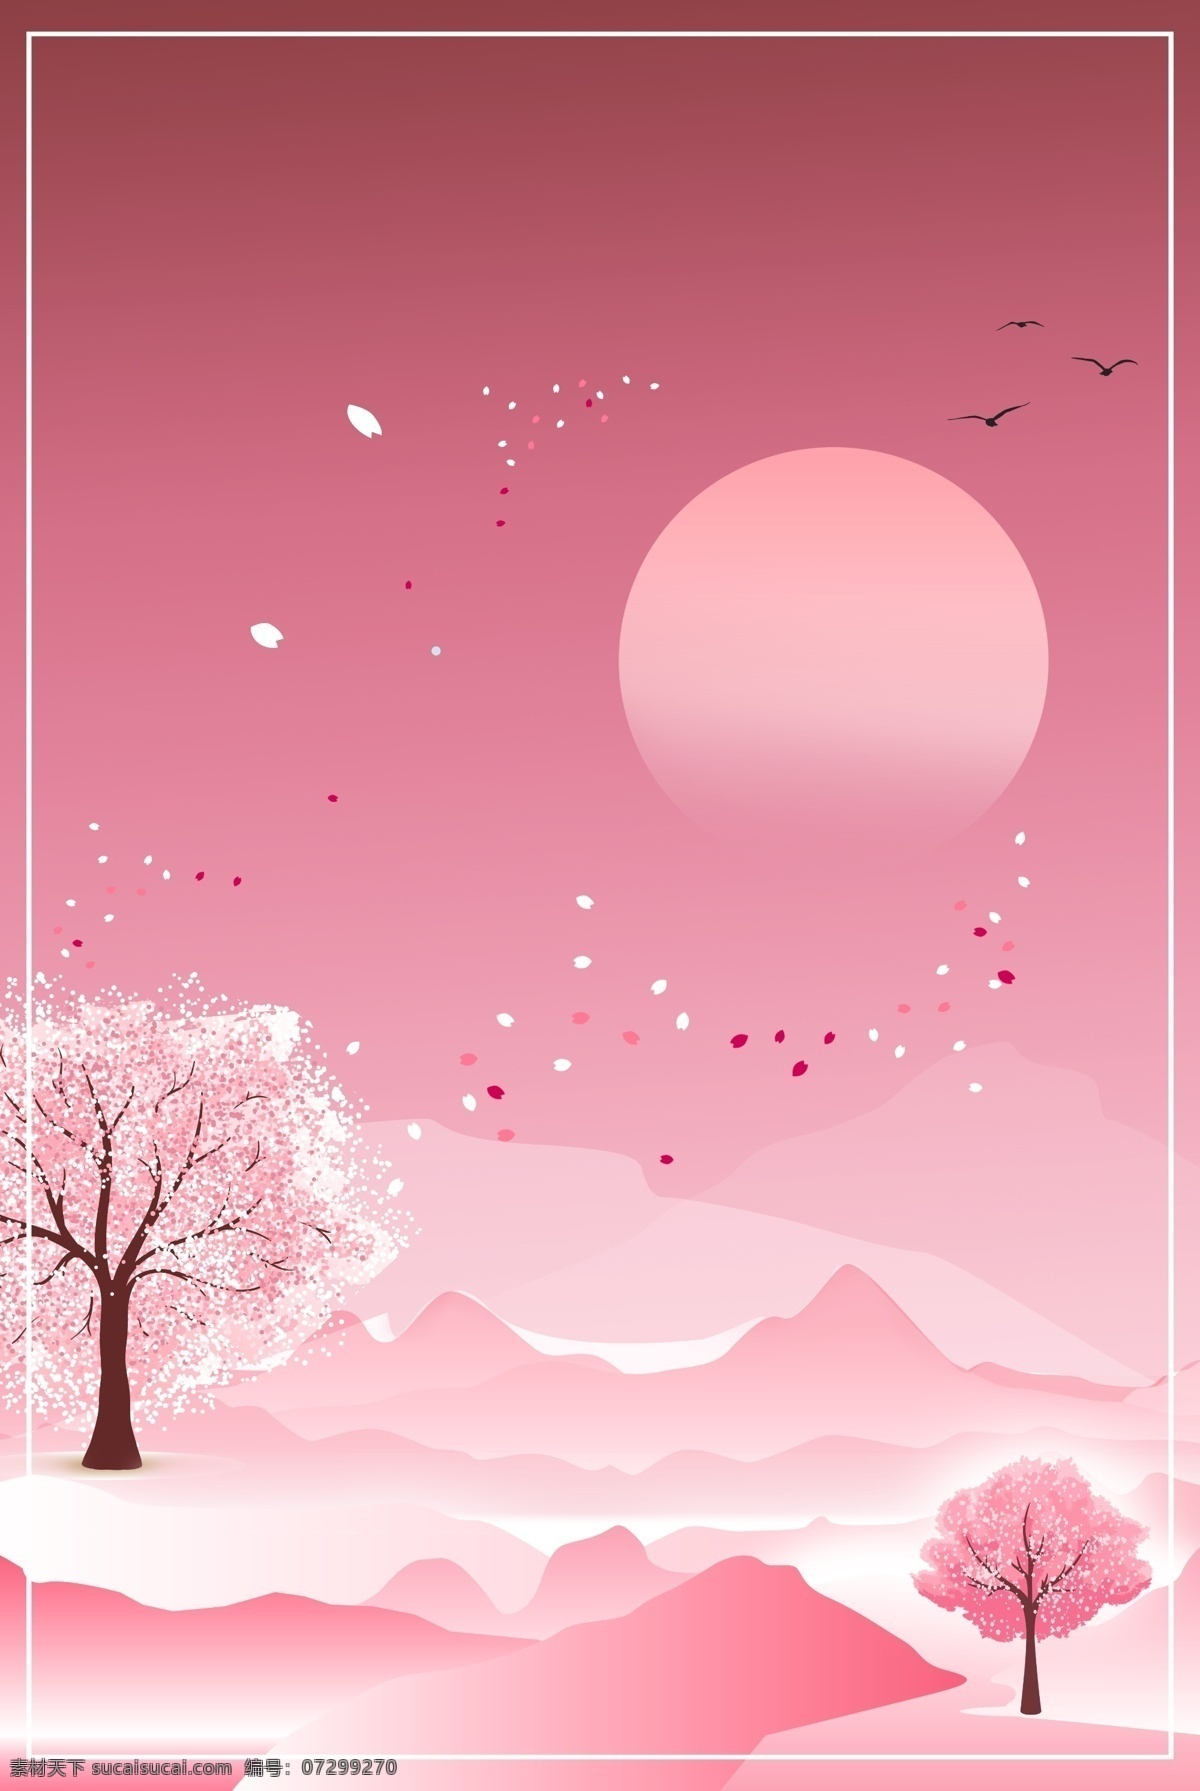 粉色 秋季 夜光 景色 荧光 天空 风景 旅游 自然风景 树木 四季春光